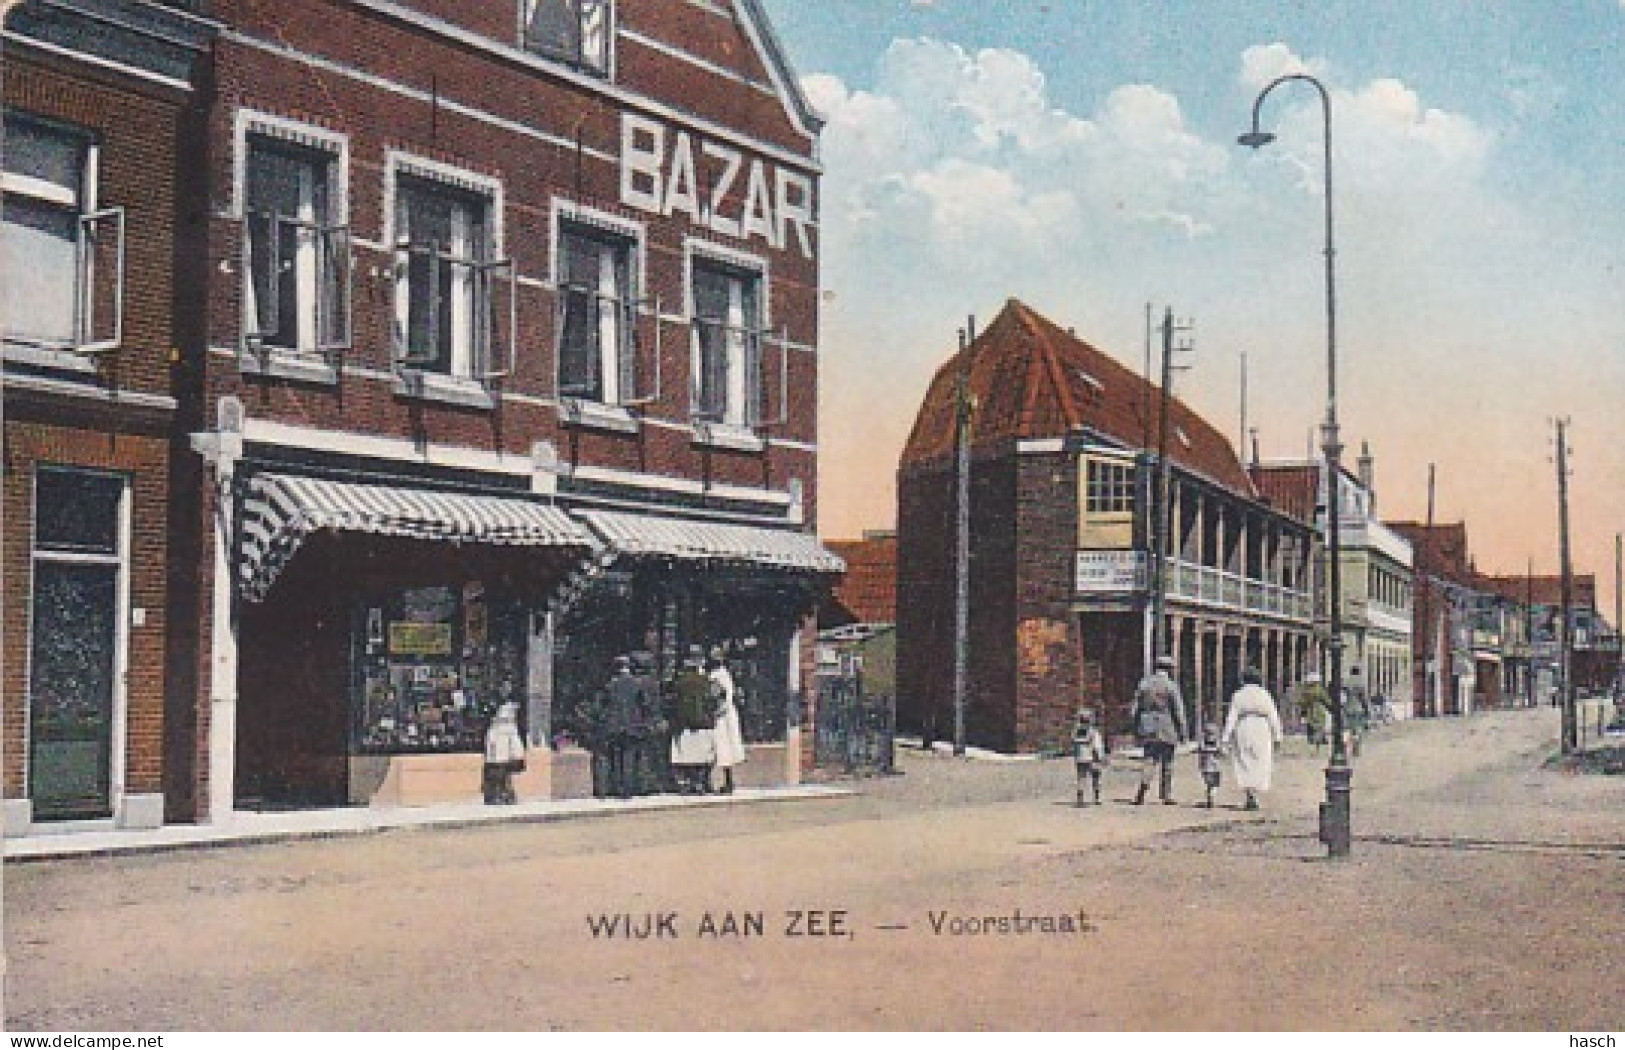 2606352Wijk Aan Zee, Voorstraat Met Bazar En De Heeren En Dames Kaper. – 1928 - Wijk Aan Zee